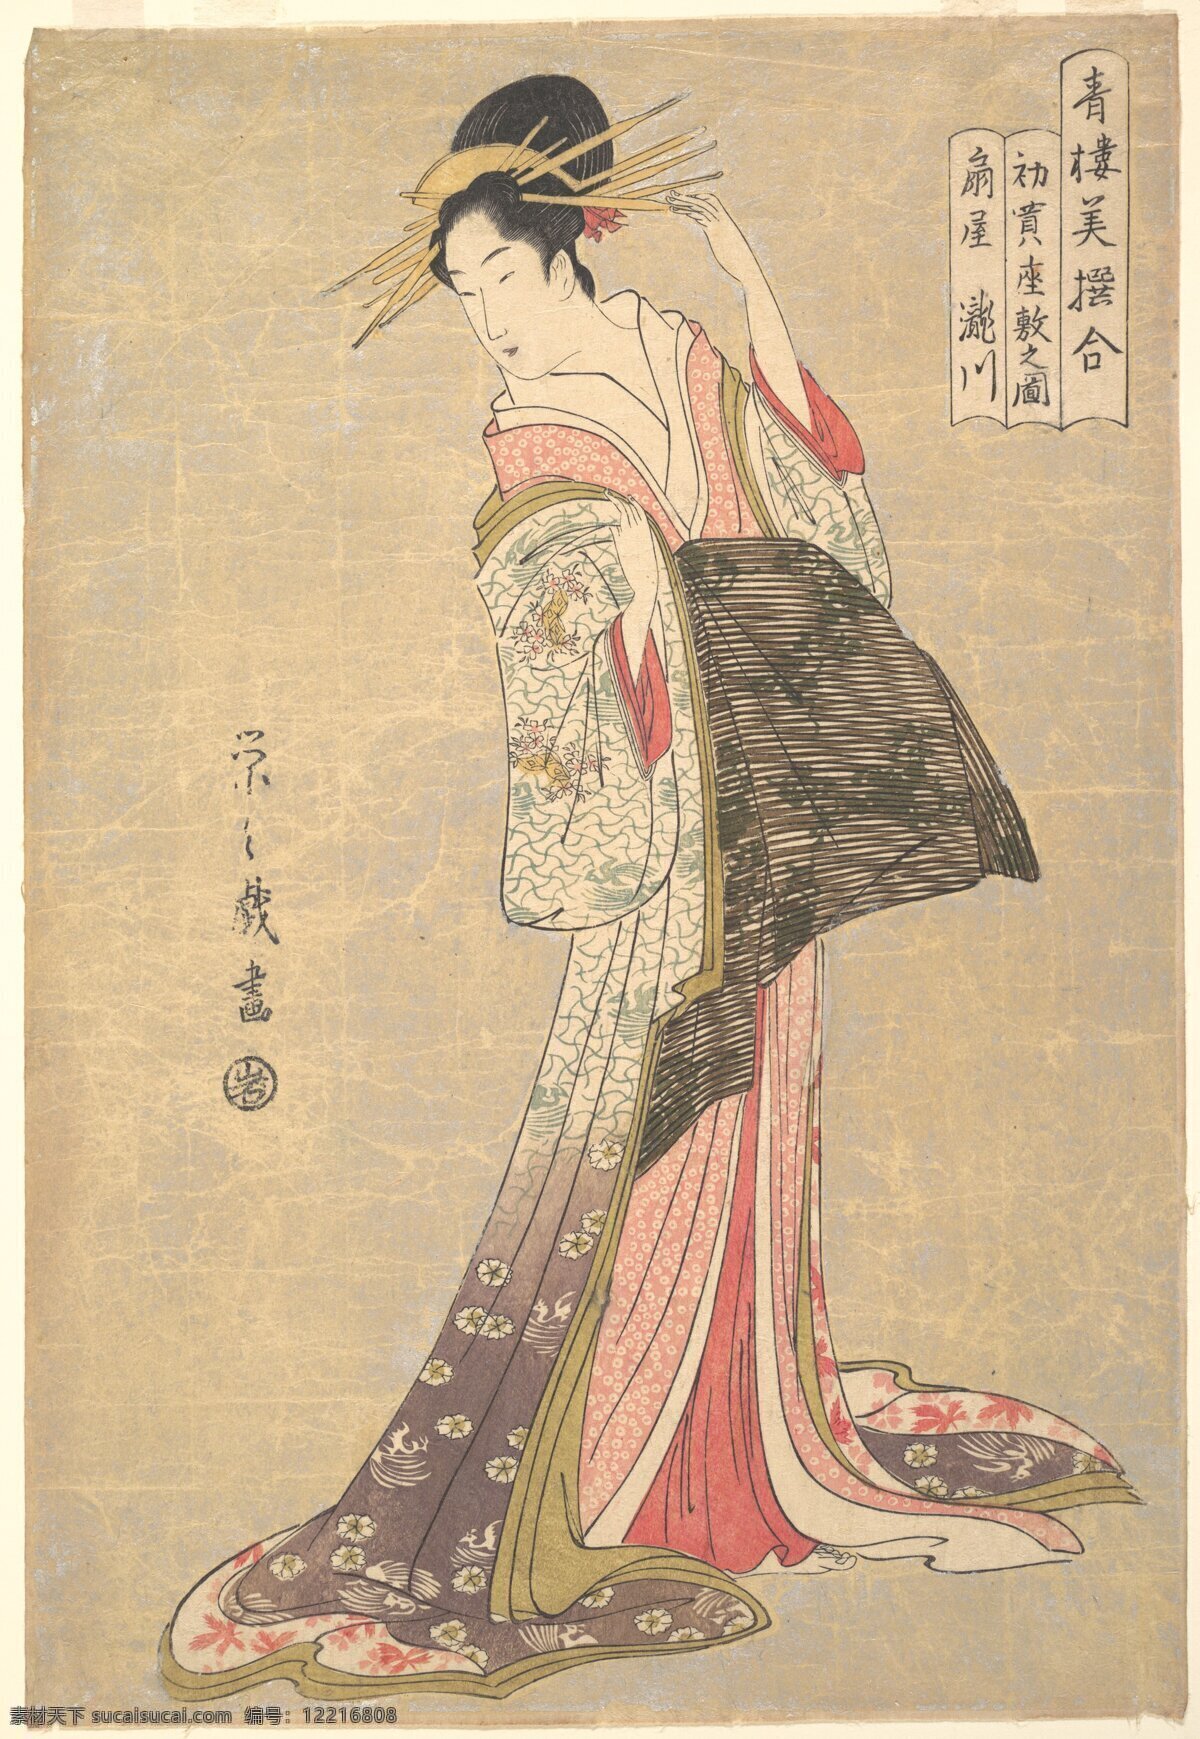 浮世绘 日本 绘画 传统 和服 妇女 女性 艺妓 发簪 美术馆藏品 绘画书法 文化艺术